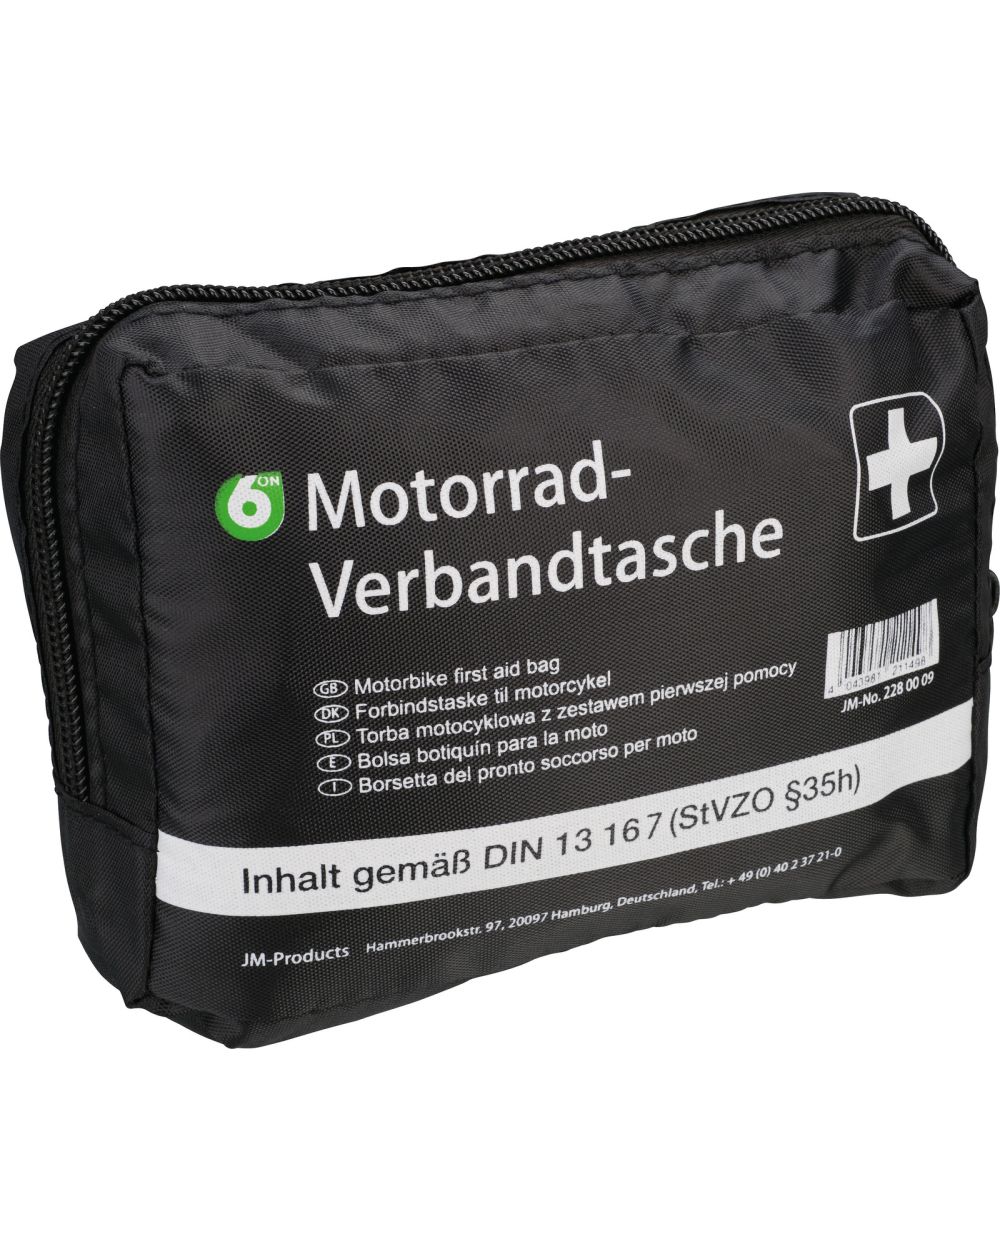 Erste Hilfe Motorrad Verbandtasche, Maße ca. 160 x 115 x 60mm